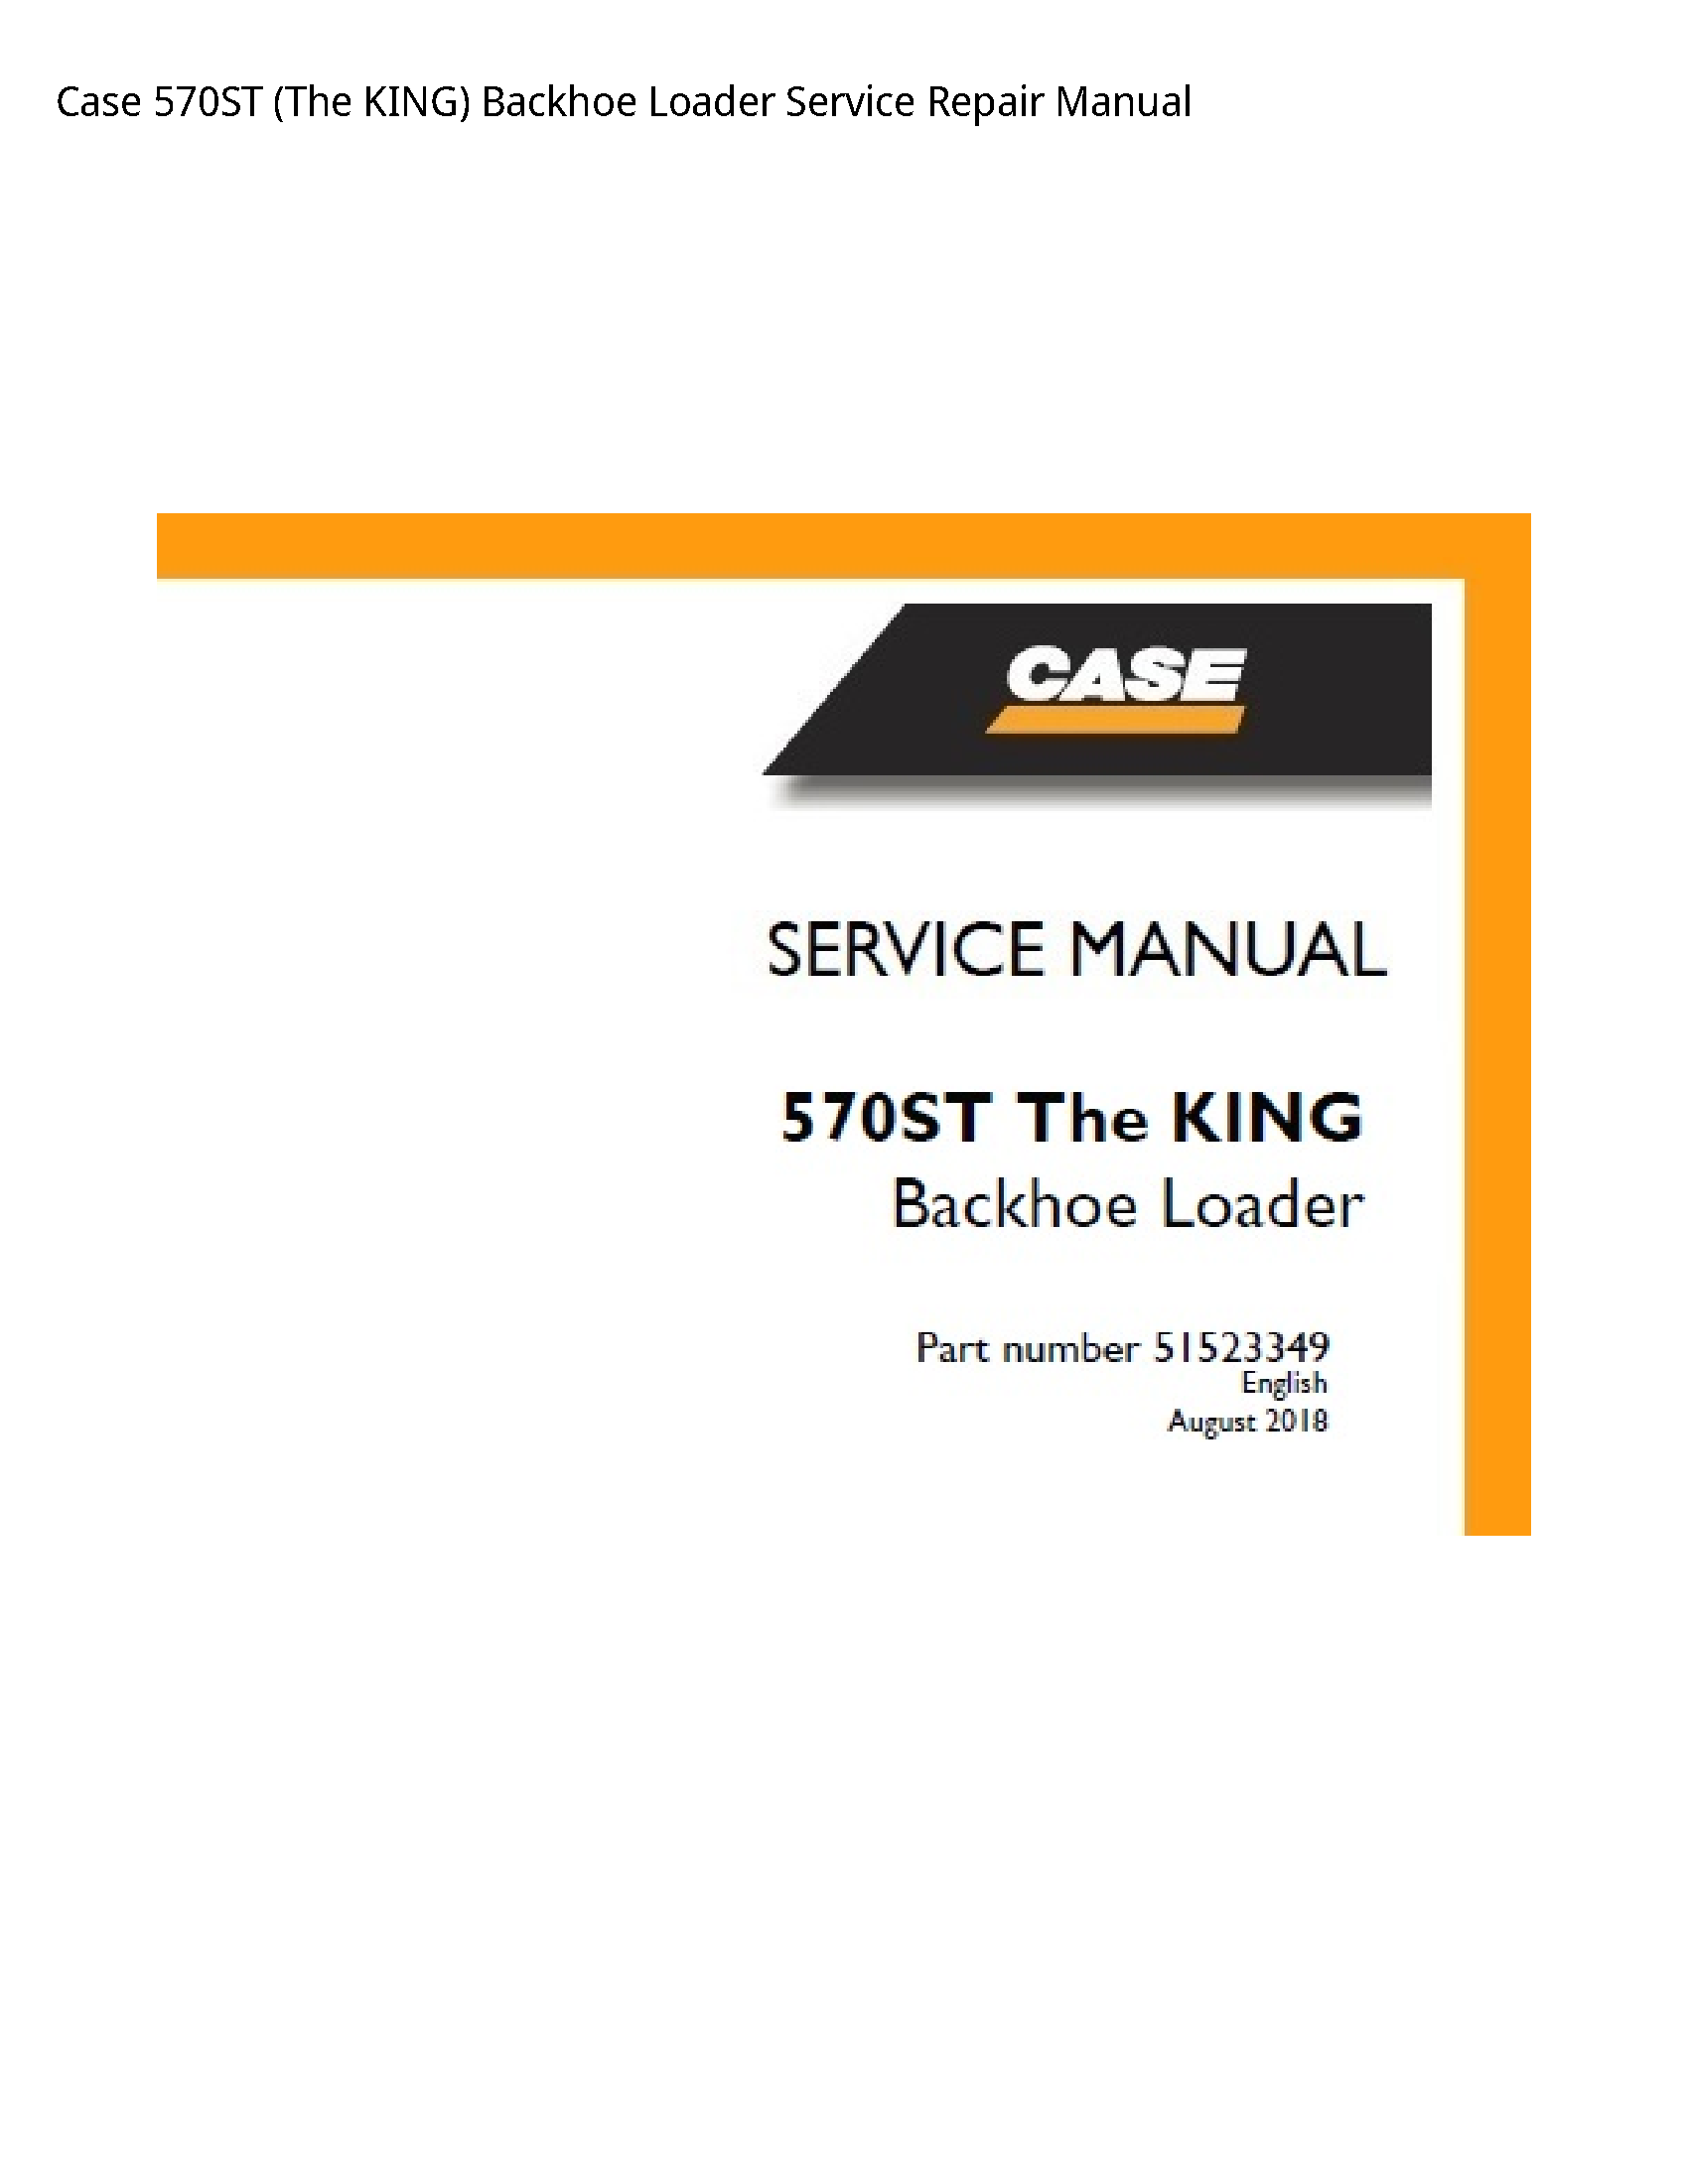 Case/Case IH 570ST (The KING) Backhoe Loader manual